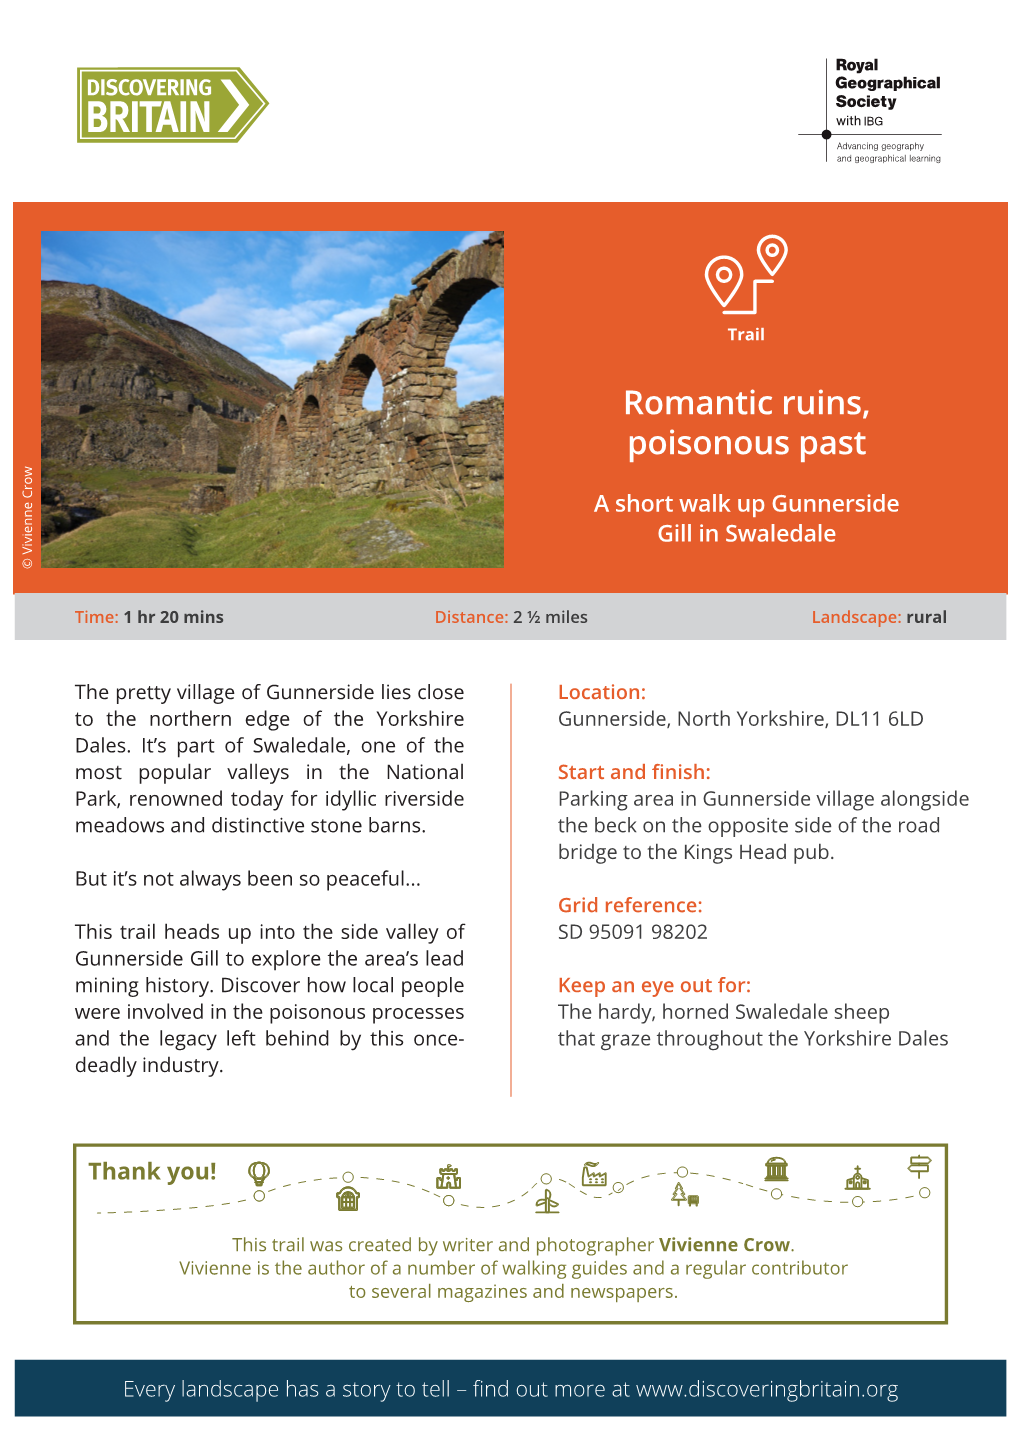 Romantic Ruins, Poisonous Past